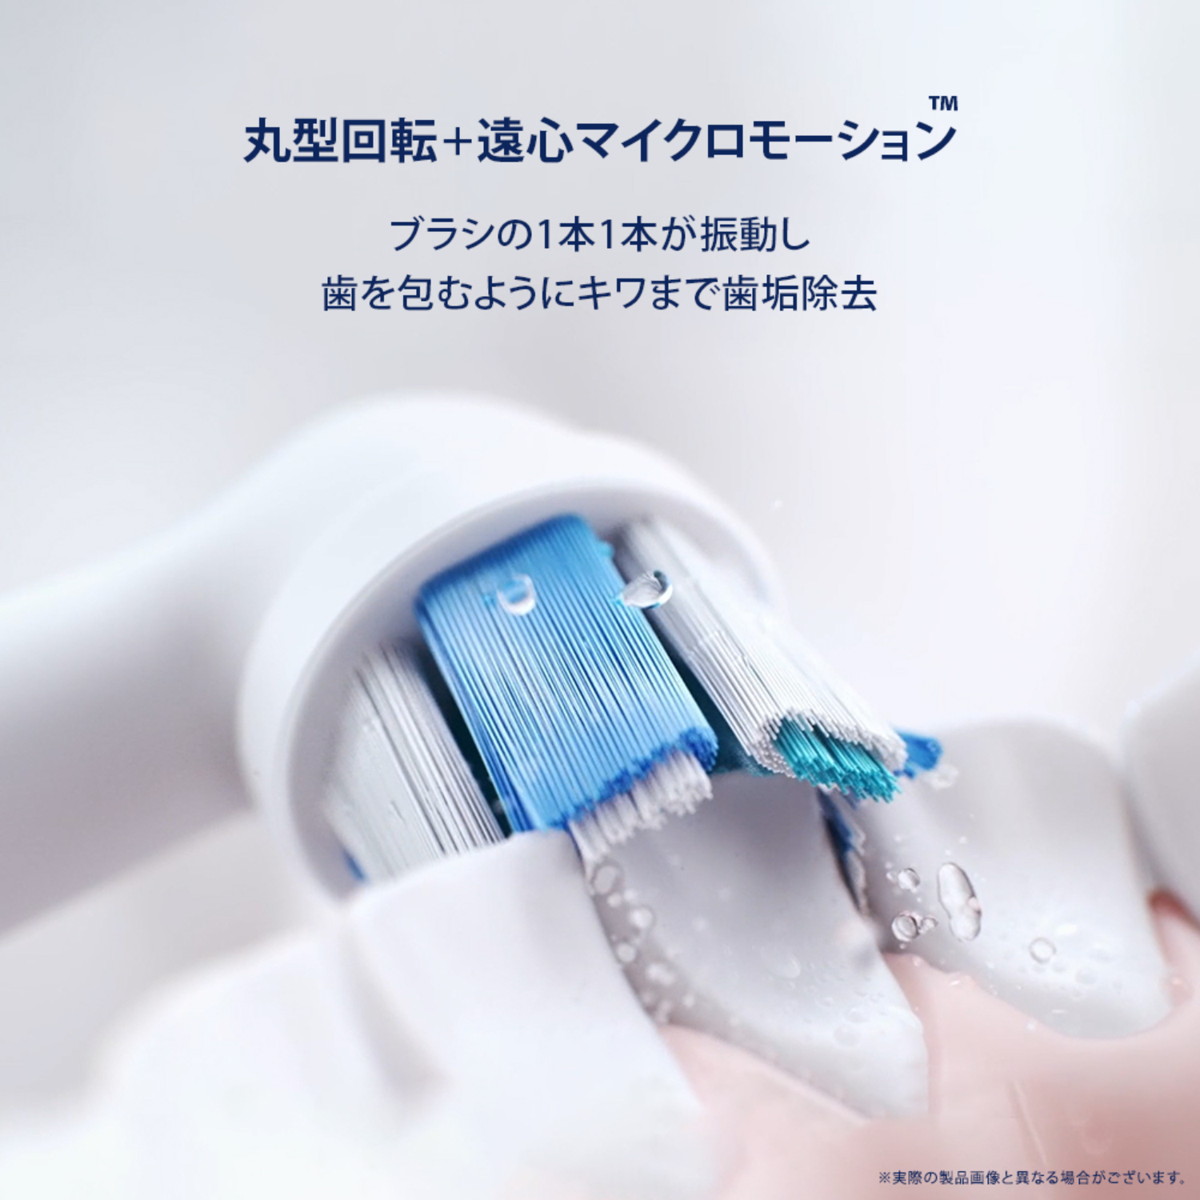 BRAUN 電動歯ブラシ io5 マットブラック